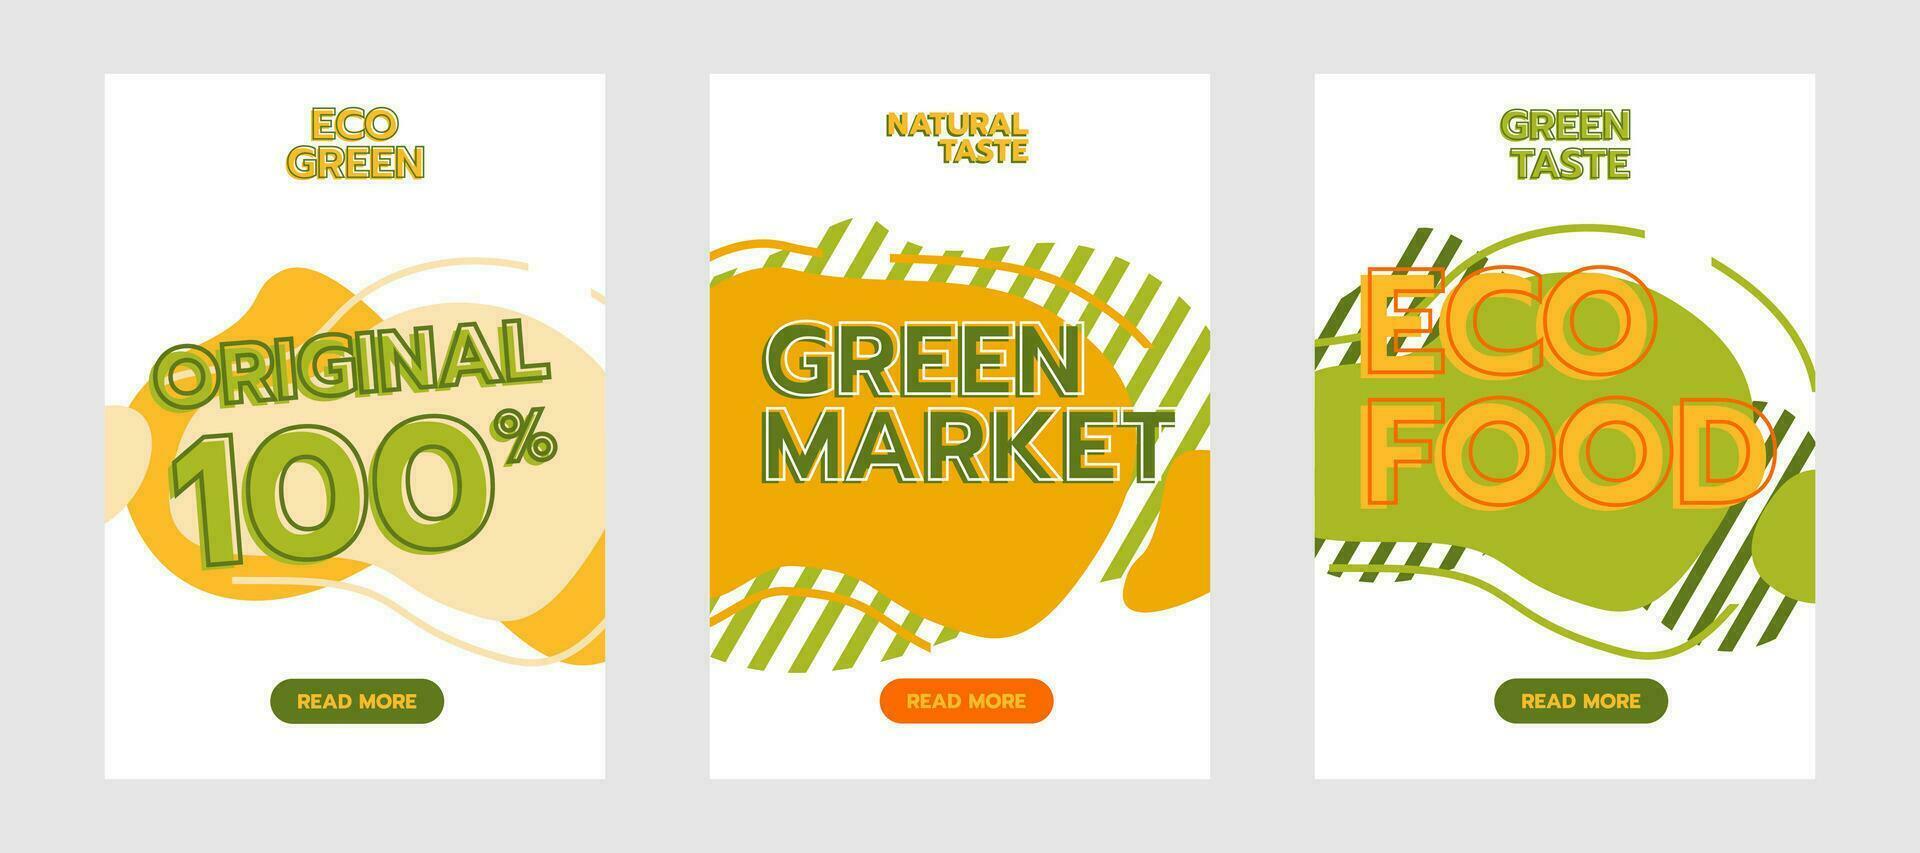 rabatt försäljning handla särskild befordran pris grön organisk marknadsföra retro porträtt bakgrund affär detaljhandeln företag vektor illustration